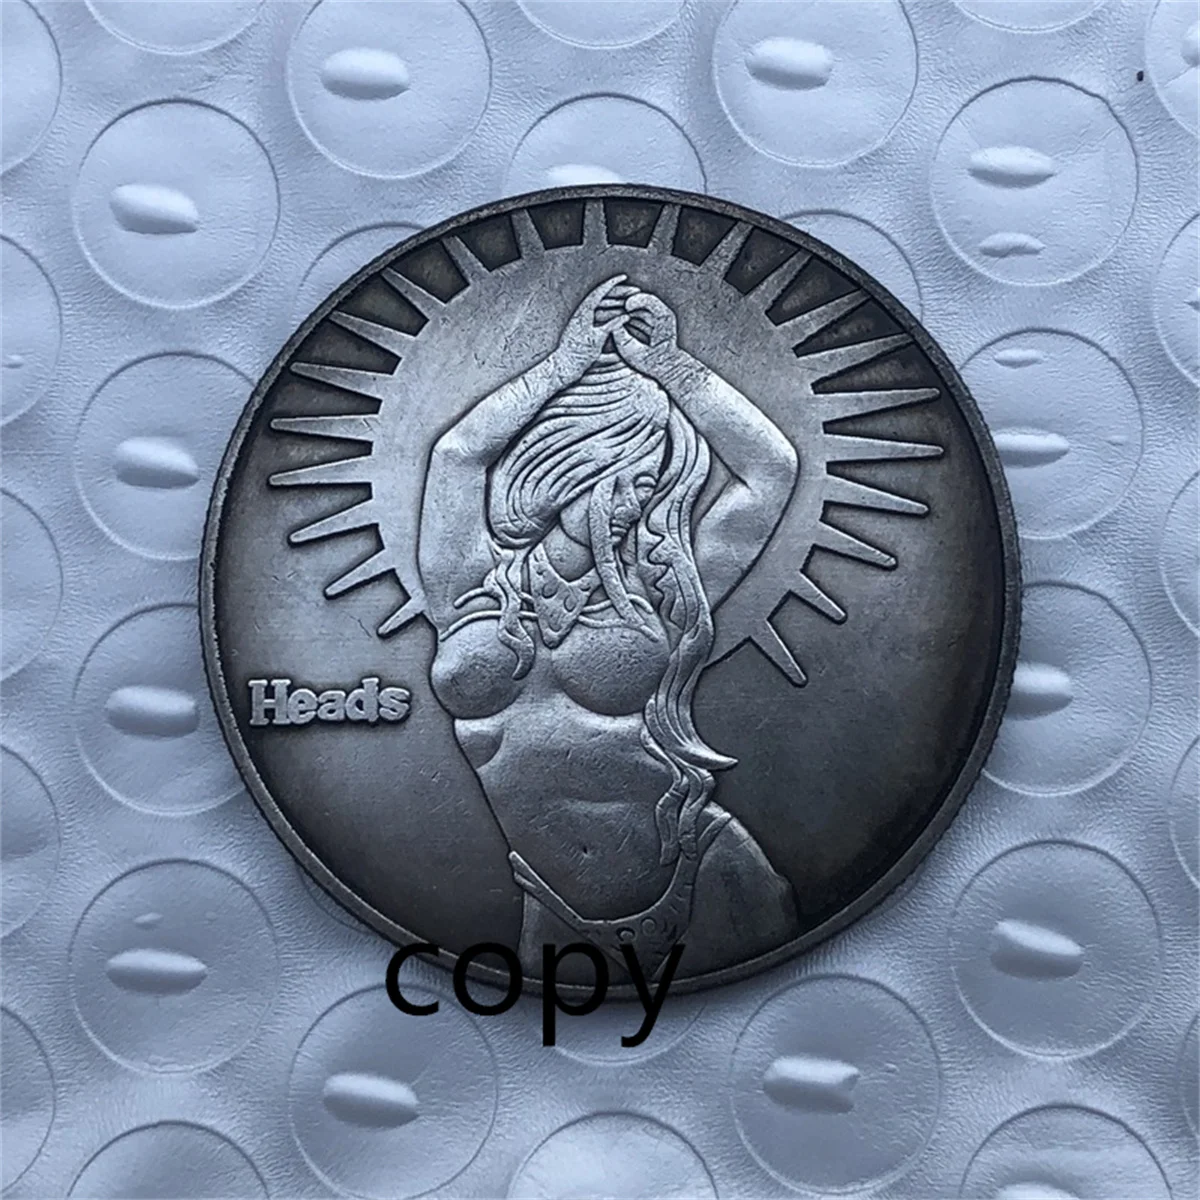 Спинтрии - древнеримские эротические монеты | Пикабу